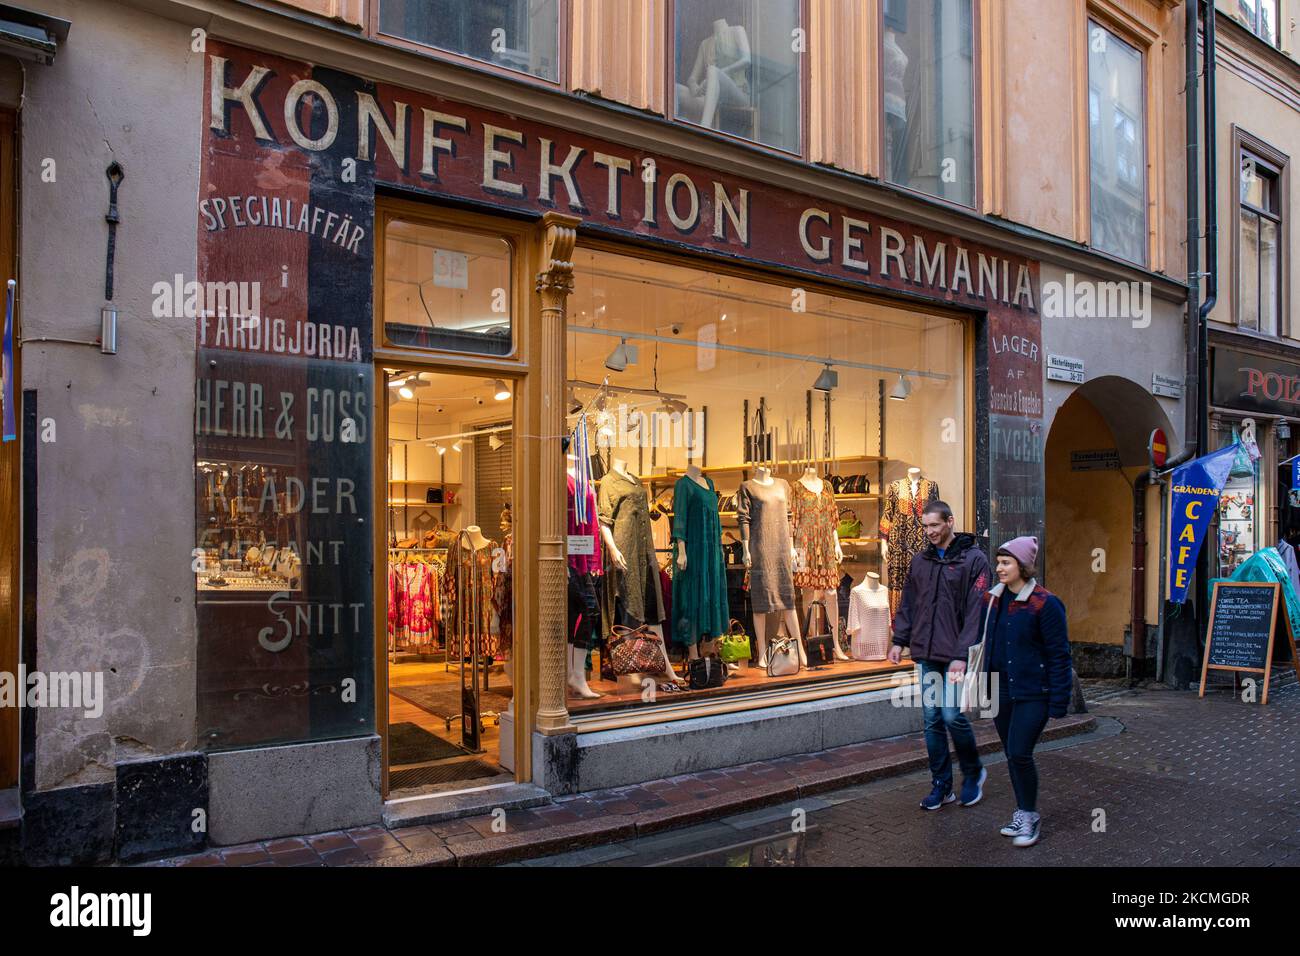 Konfektion Germania Bekleidungsgeschäft in Gamla Stan oder Altstadt von Stockholm, Schweden Stockfoto